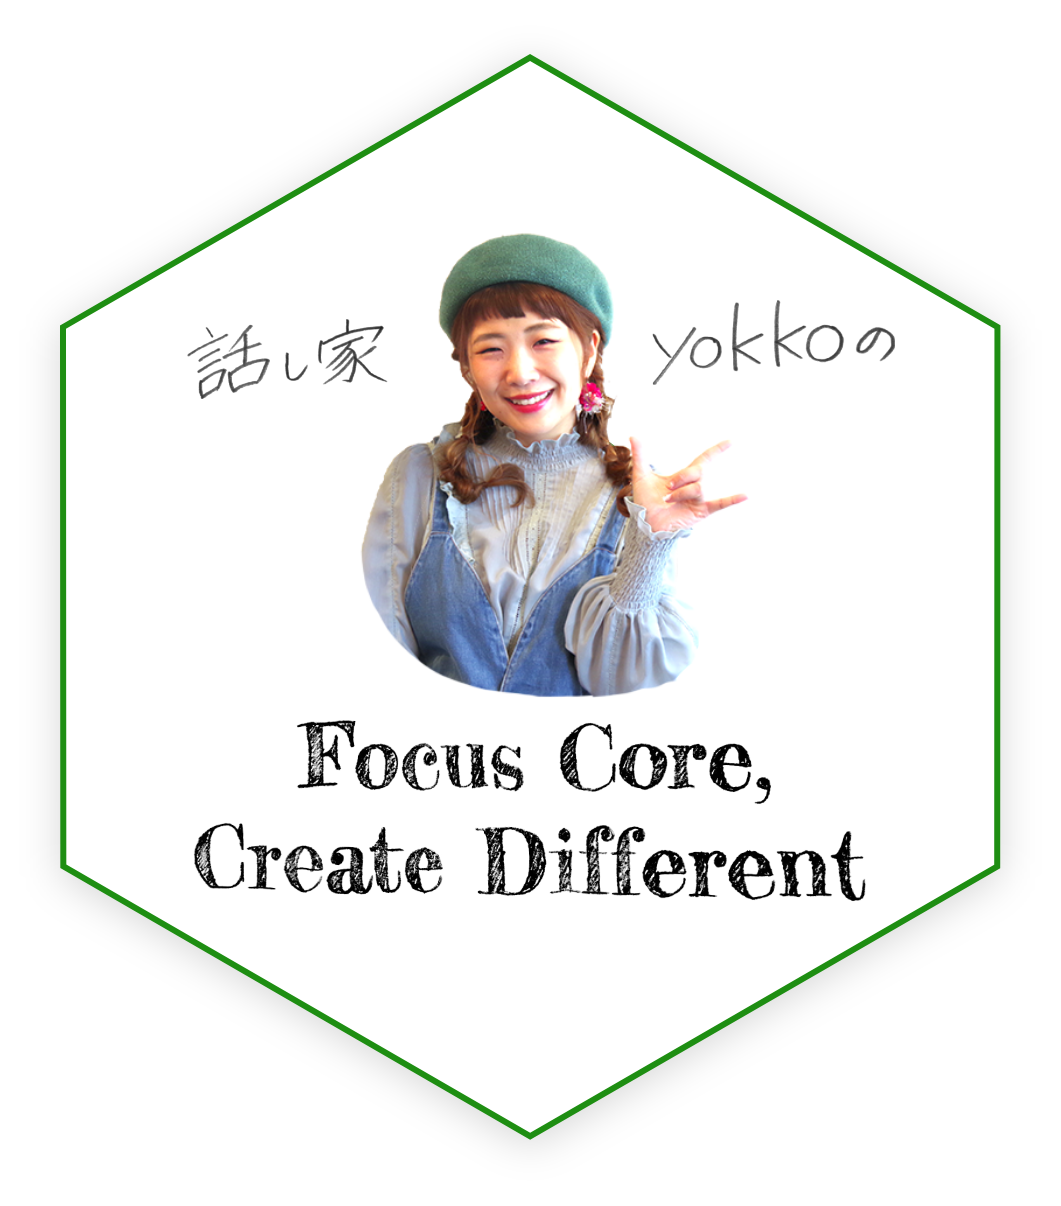 話し家yokkoのFocus Core,Create Different